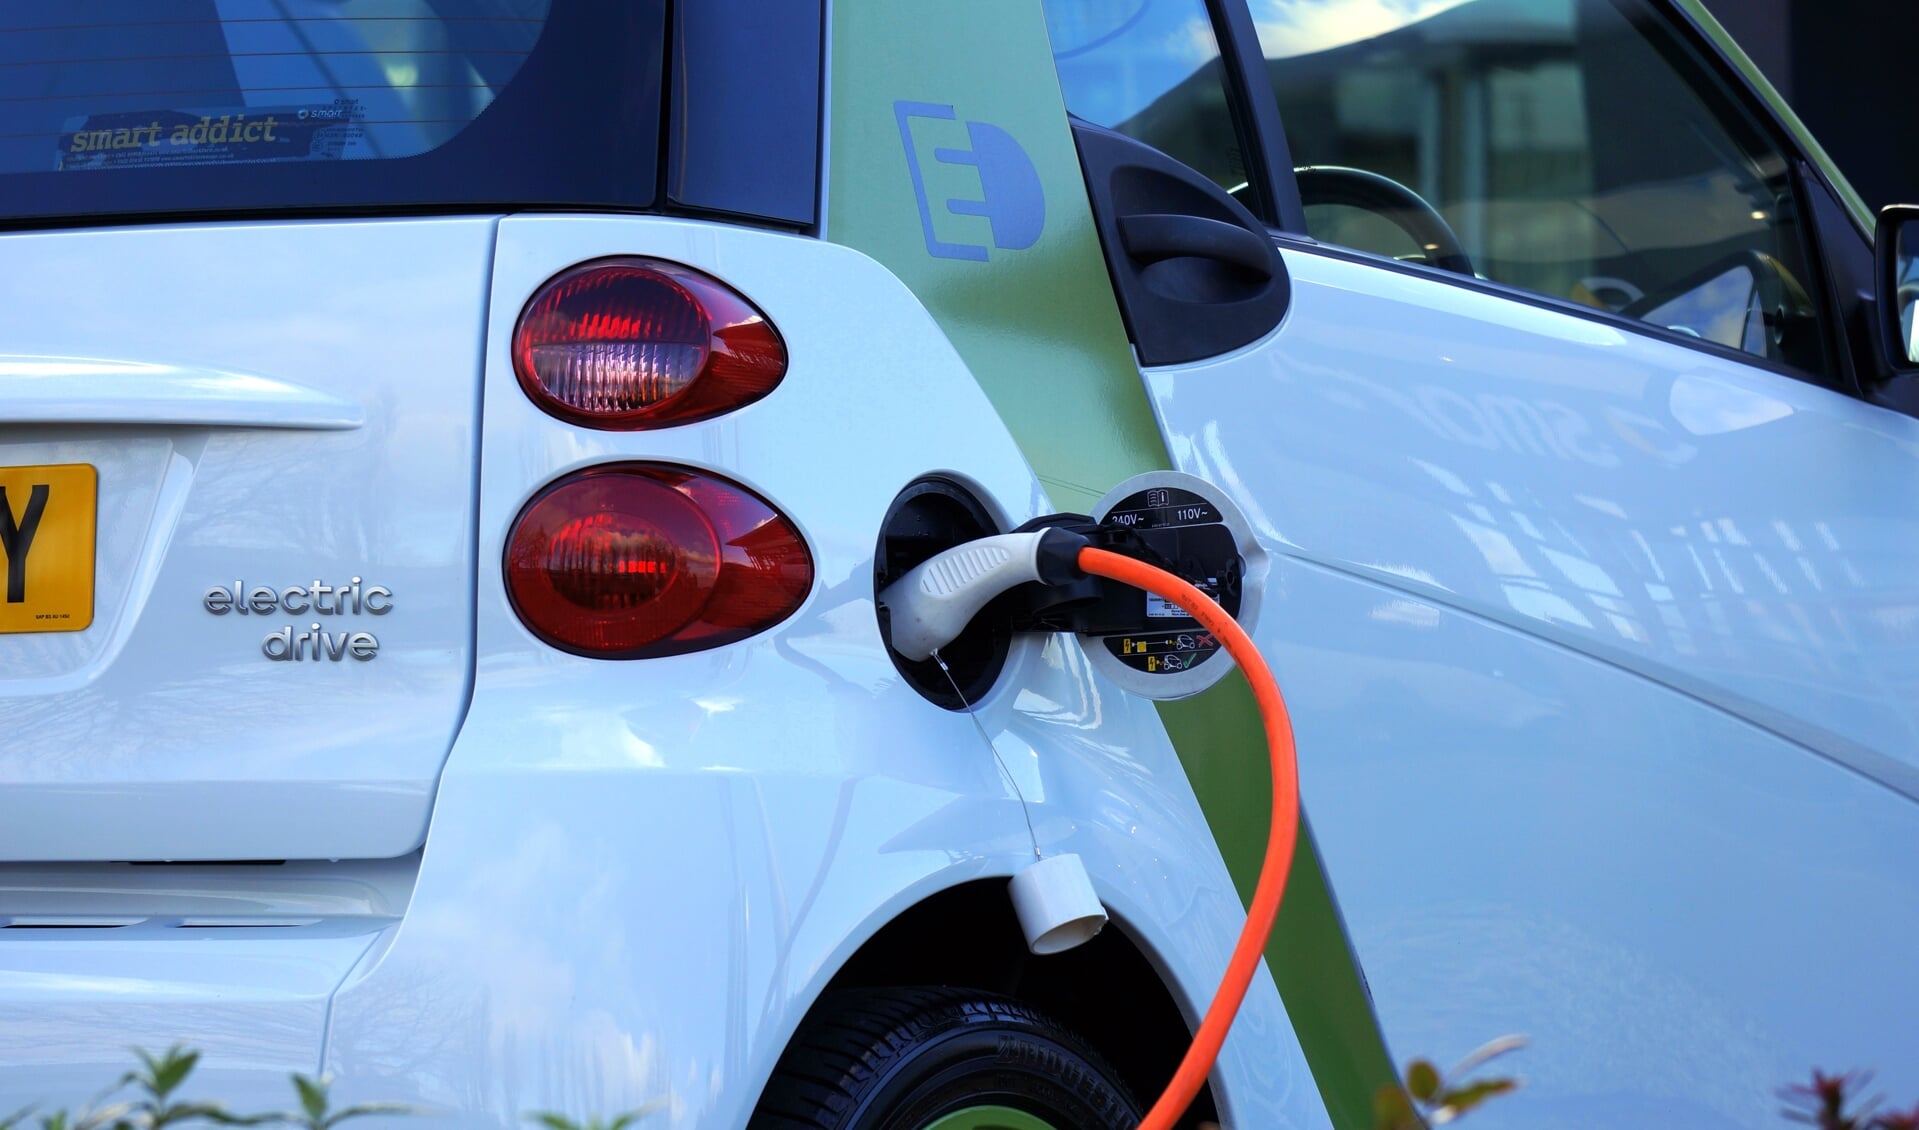 Het aantal elektrische auto's in de gemeente is toegenomen.